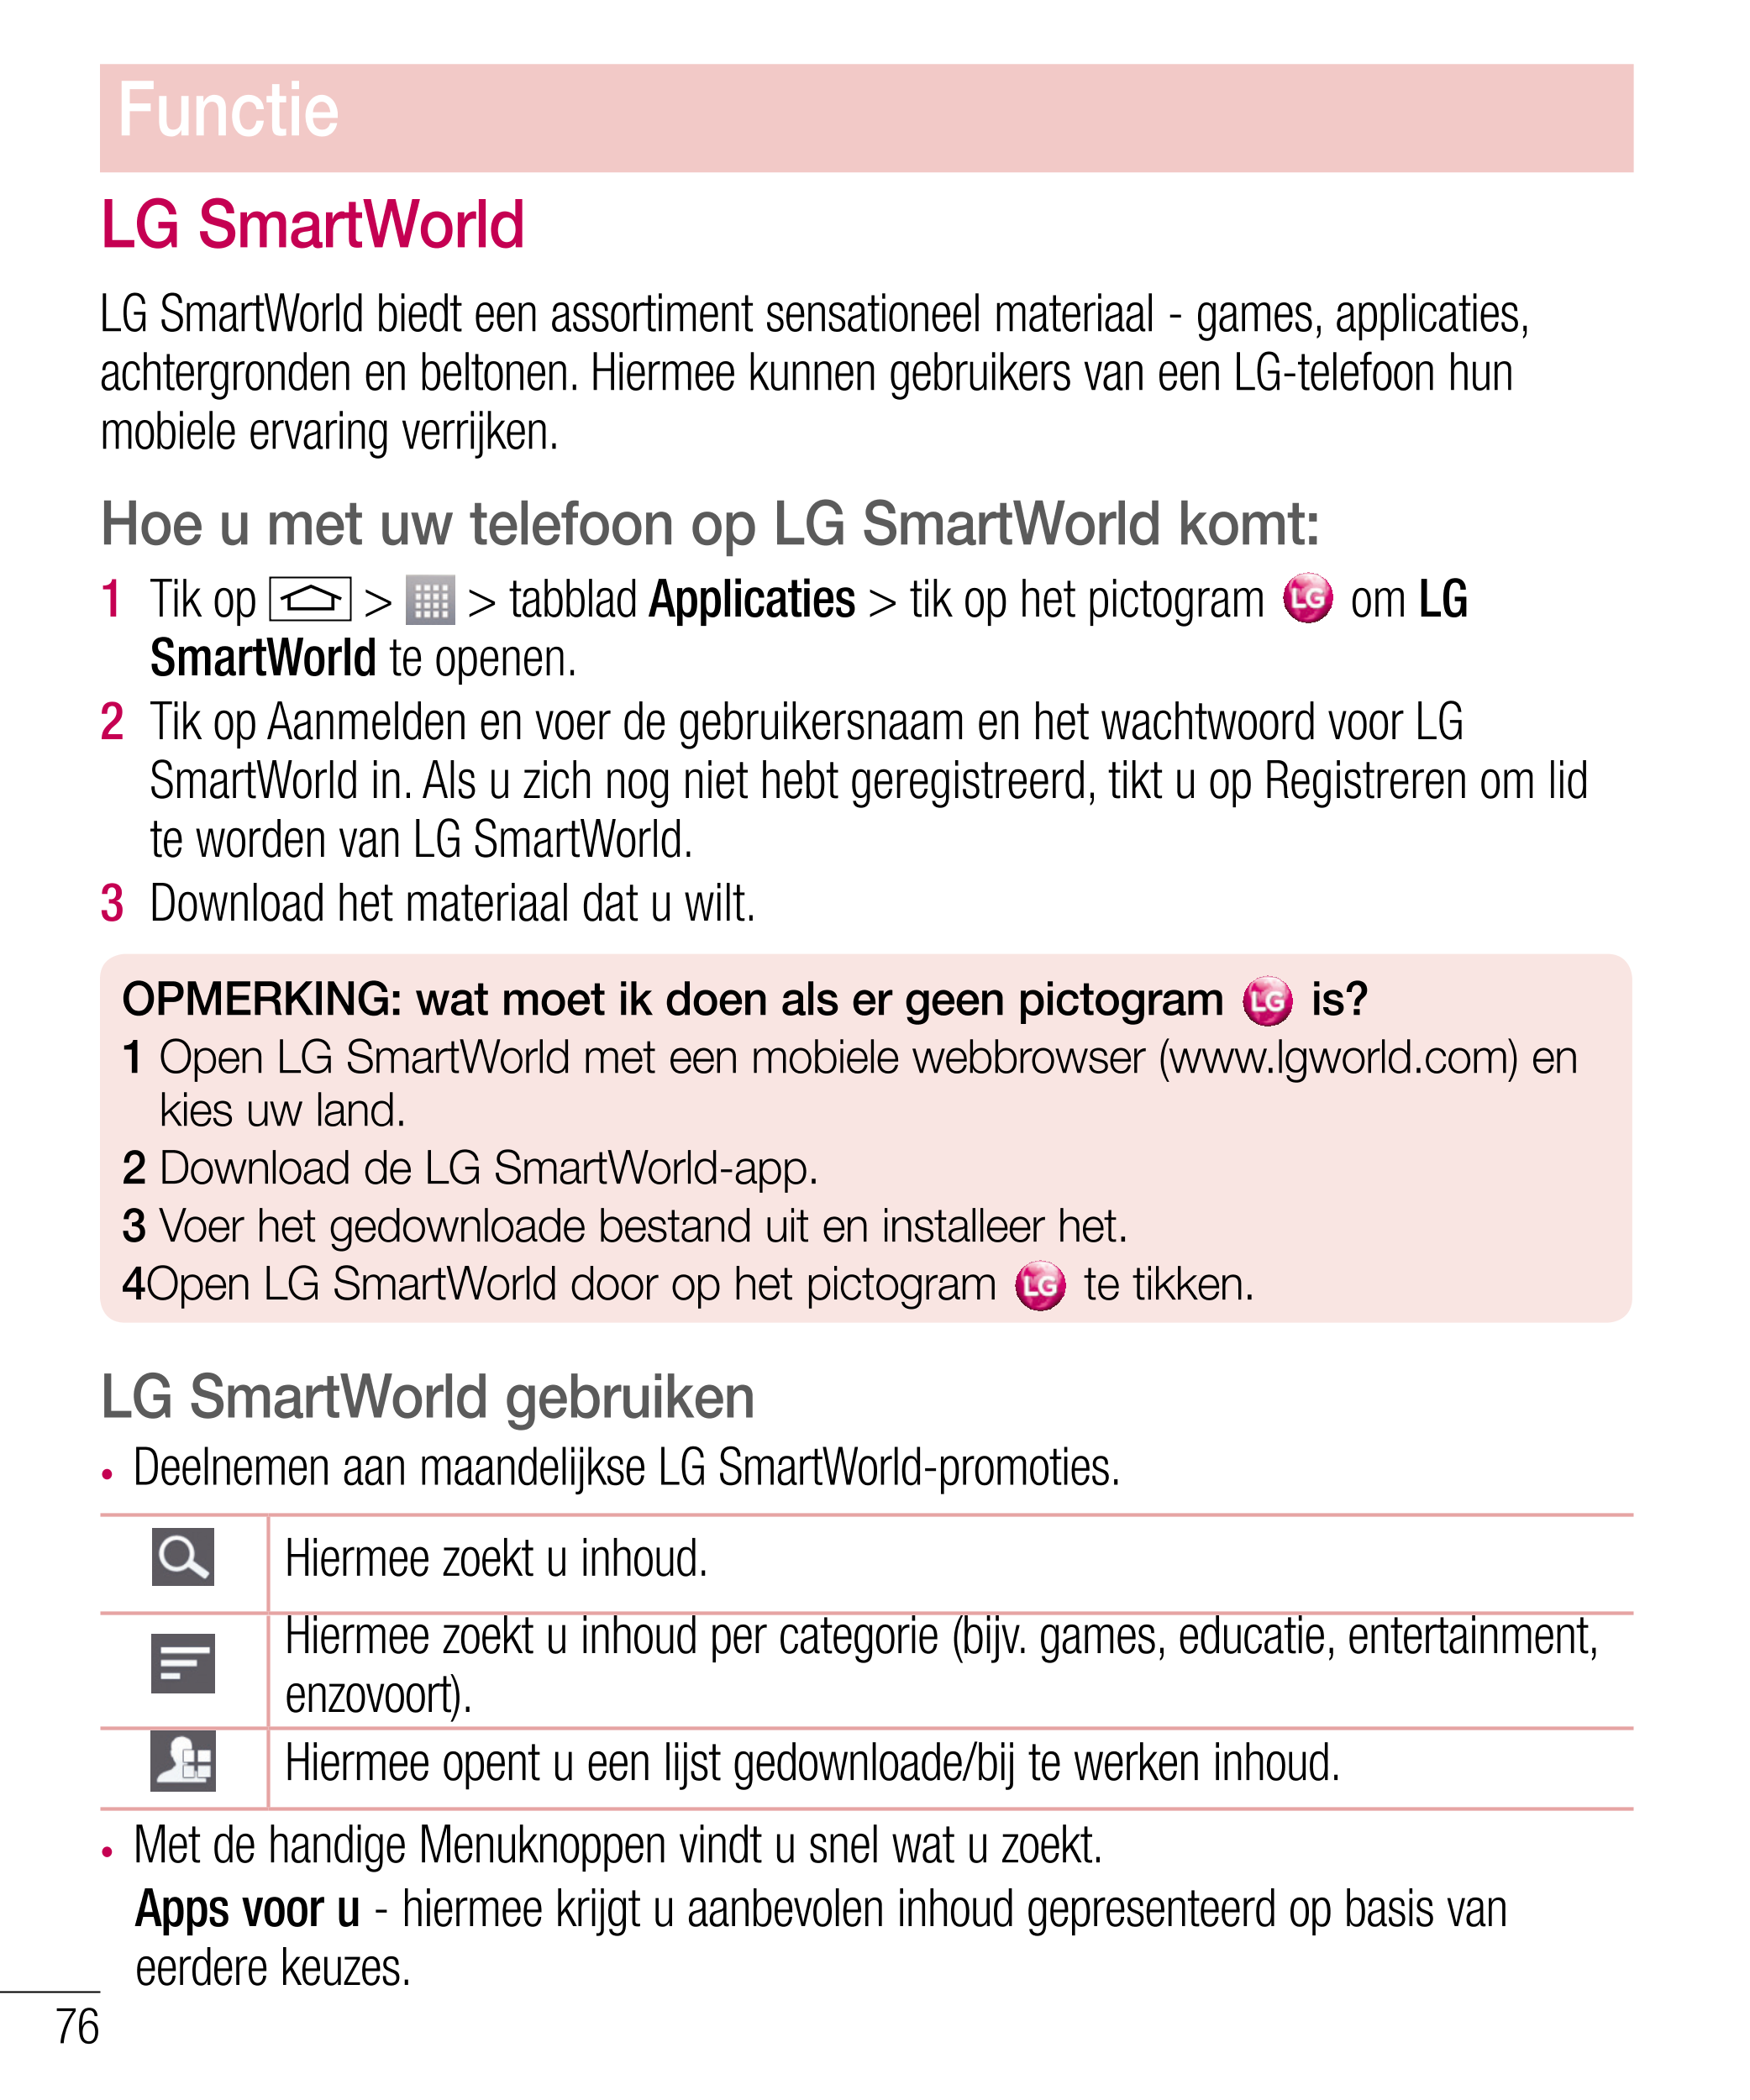 Functie
LG SmartWorld
LG SmartWorld biedt een assortiment sensationeel materiaal - games, applicaties, 
achtergronden en beltone